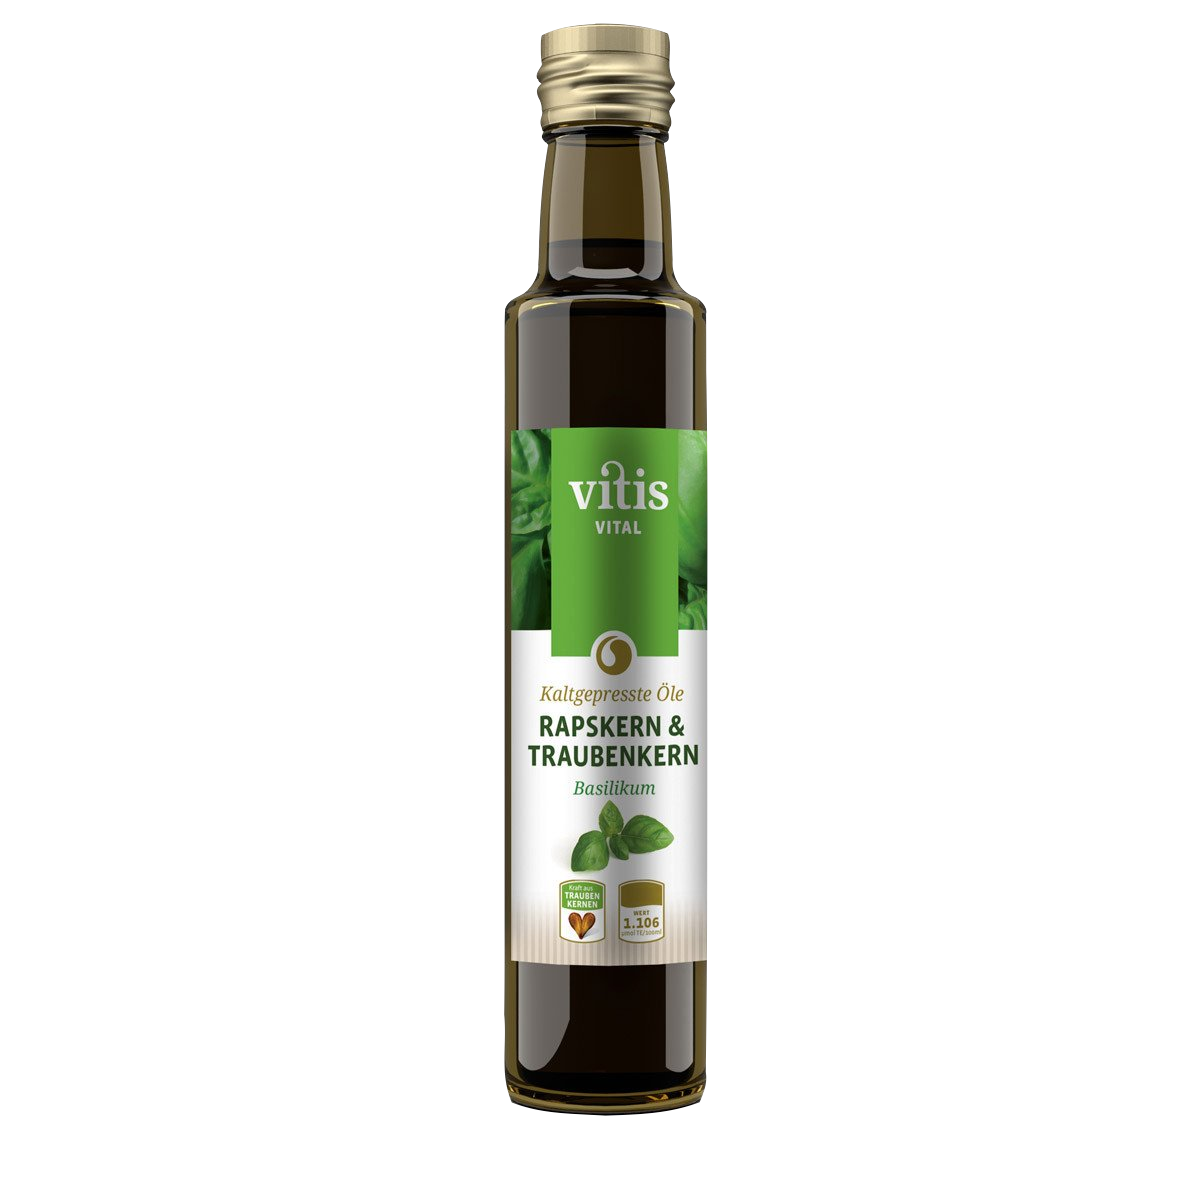 Eine Flasche 250ml kaltgepresstes Raps- und Traubenkernöl Geschmacksrichtung Basilikum von der Firma Vitis Traubenkern GmbH.